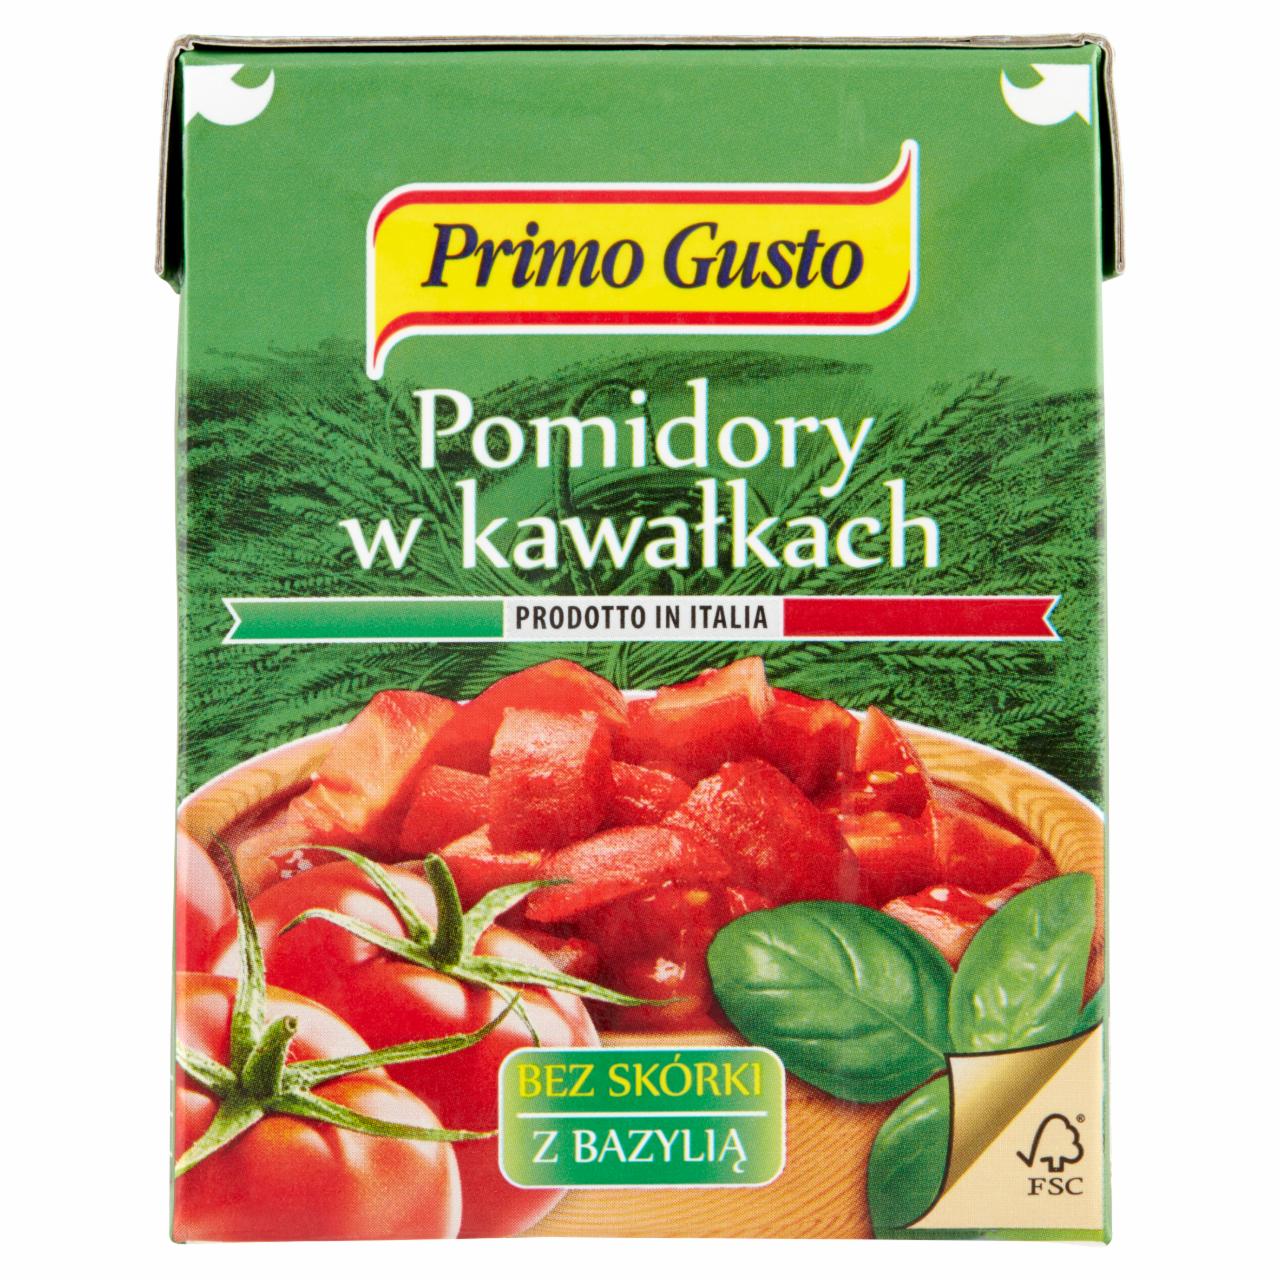 Zdjęcia - Primo Gusto Pomidory w kawałkach bez skórki z bazylią 390 g 